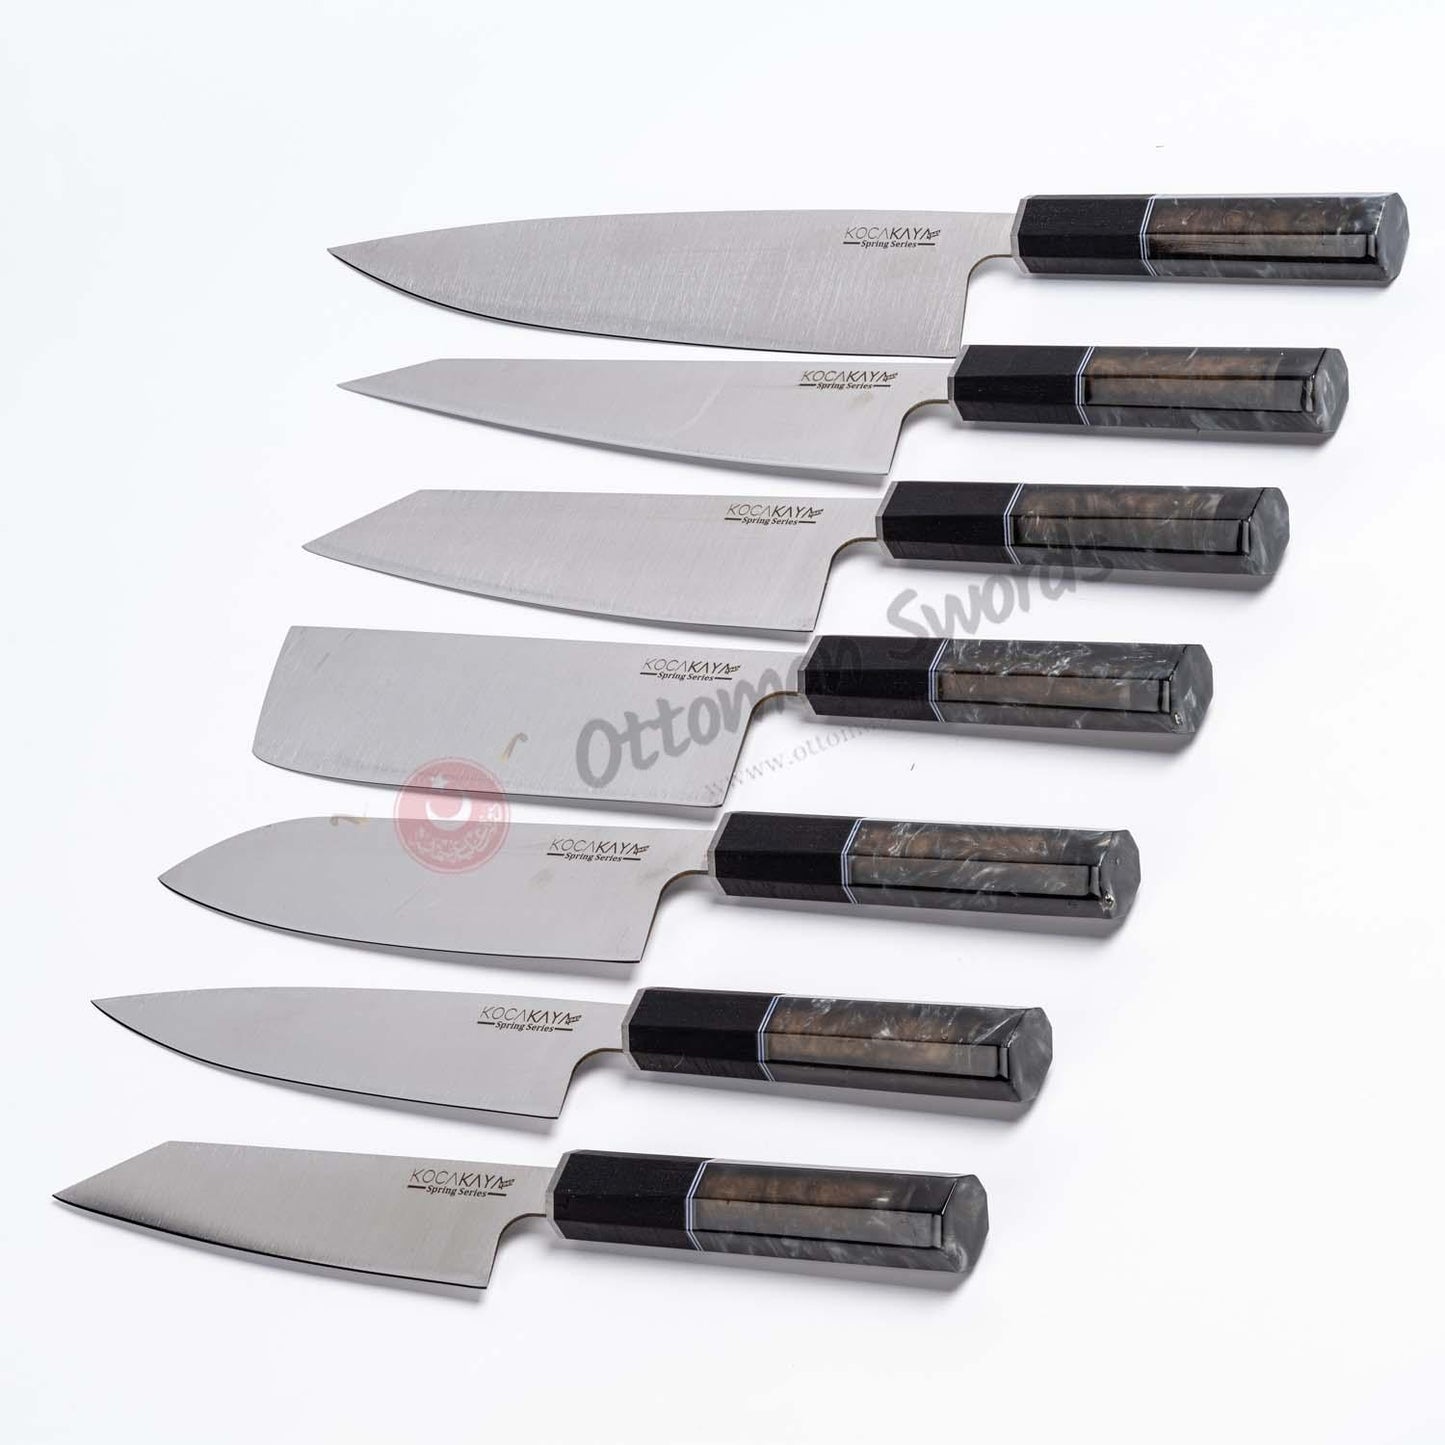 Chef's Knife Set Black